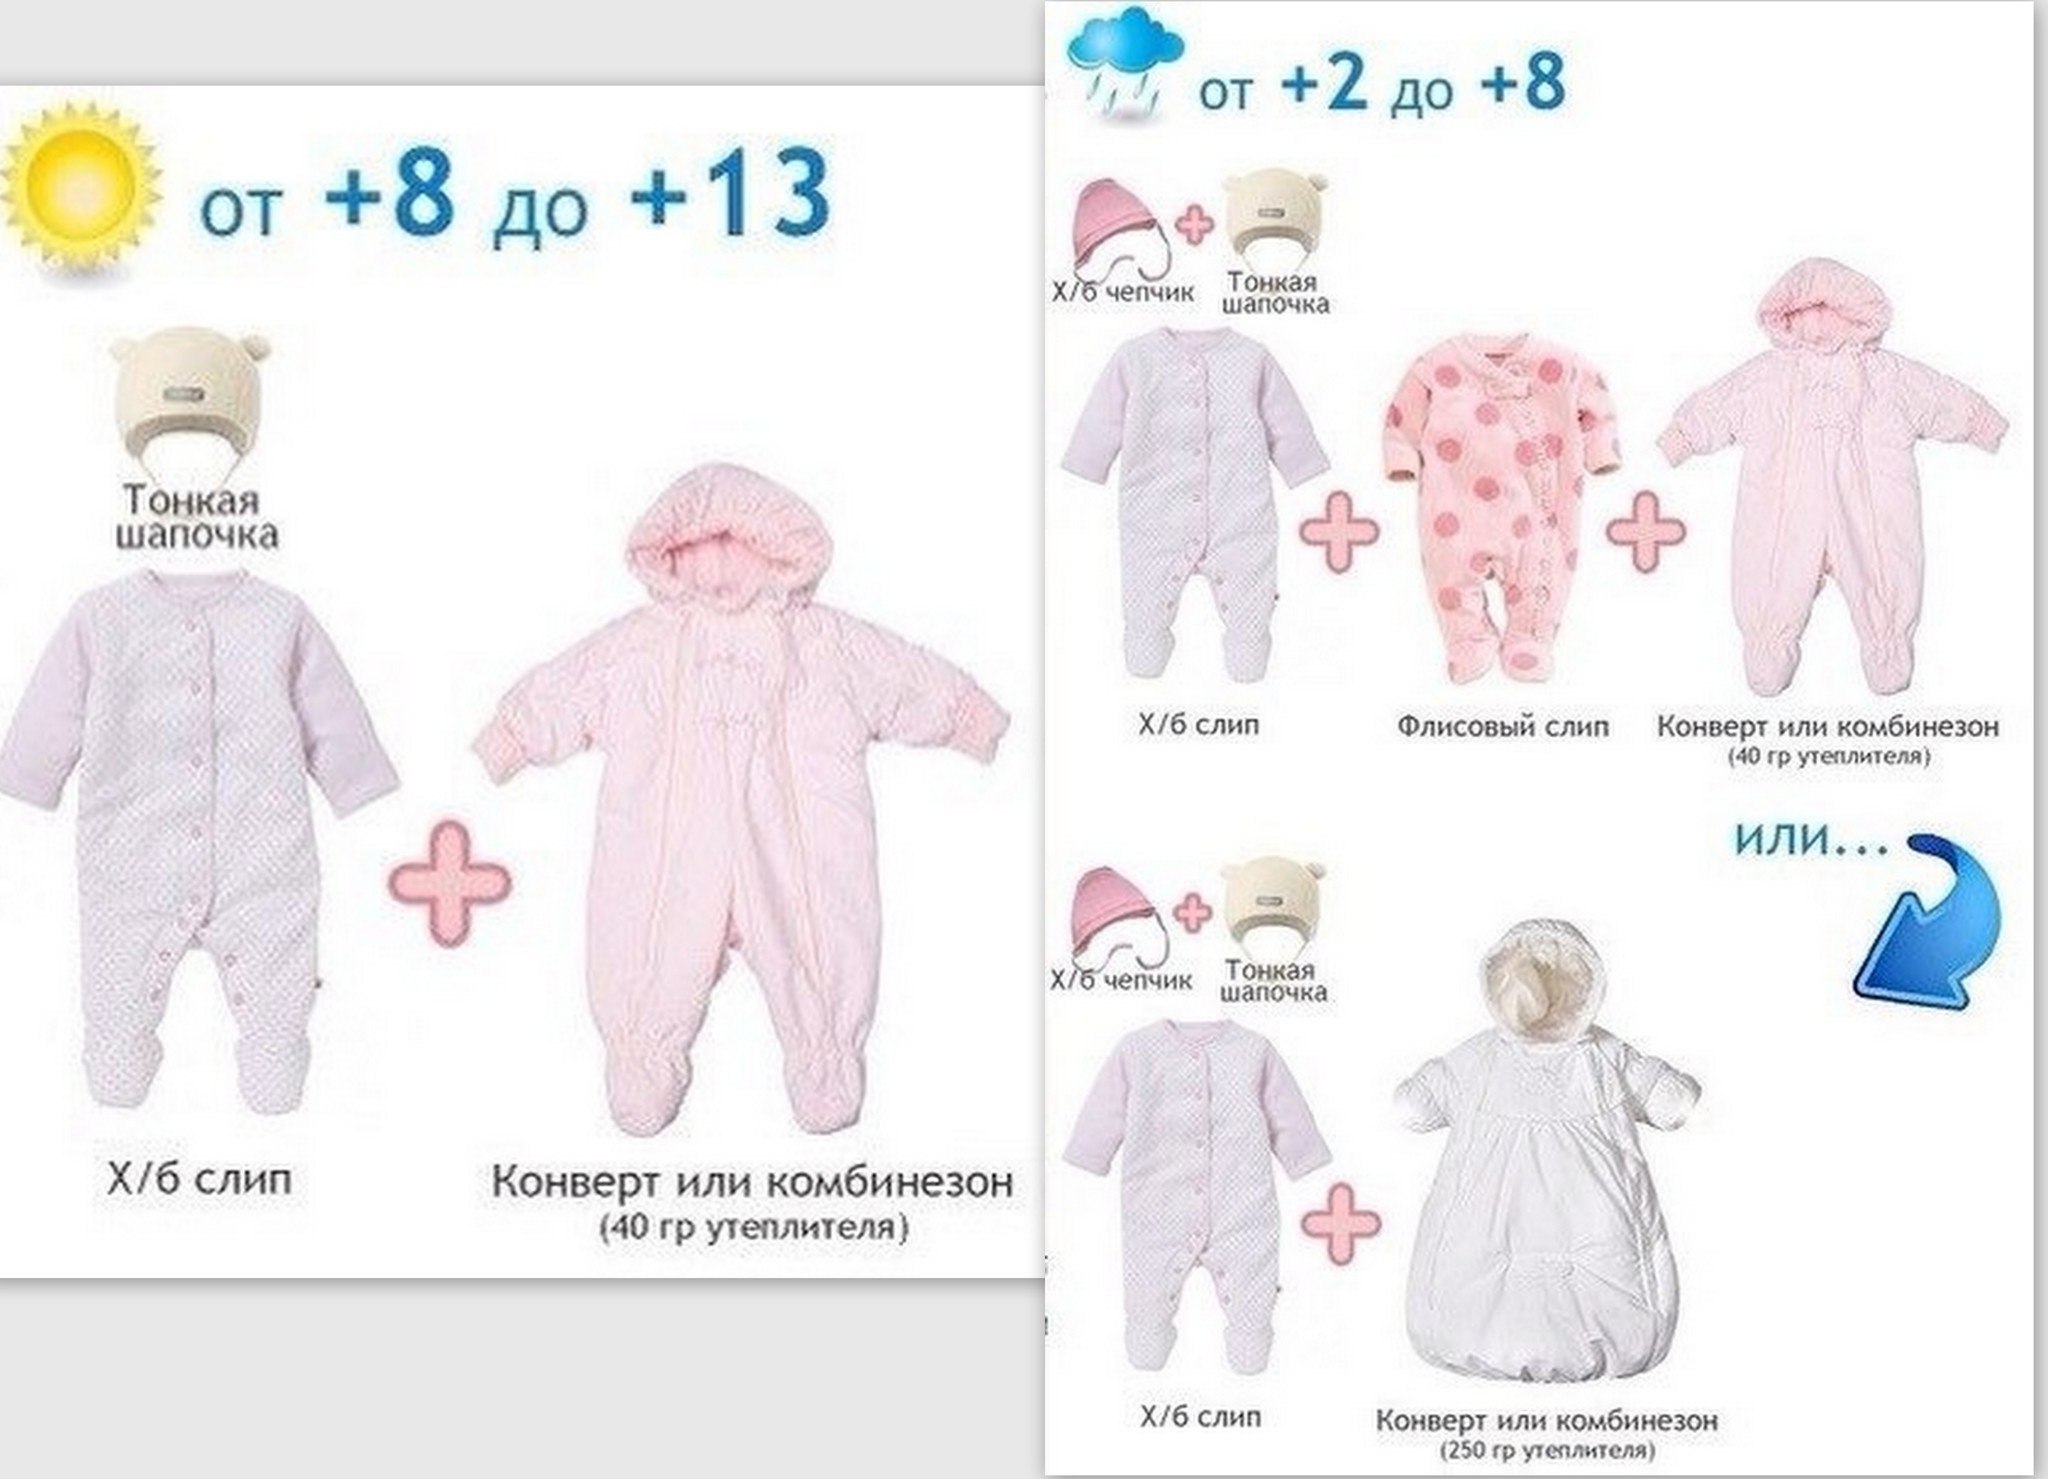 Как одеть ребенка в 3 весной. Как одеть грудничка в +10 +15. 8 Градусов как одеть грудничка. Как одеть ребенка. Одежда для новорожденных по градусам.